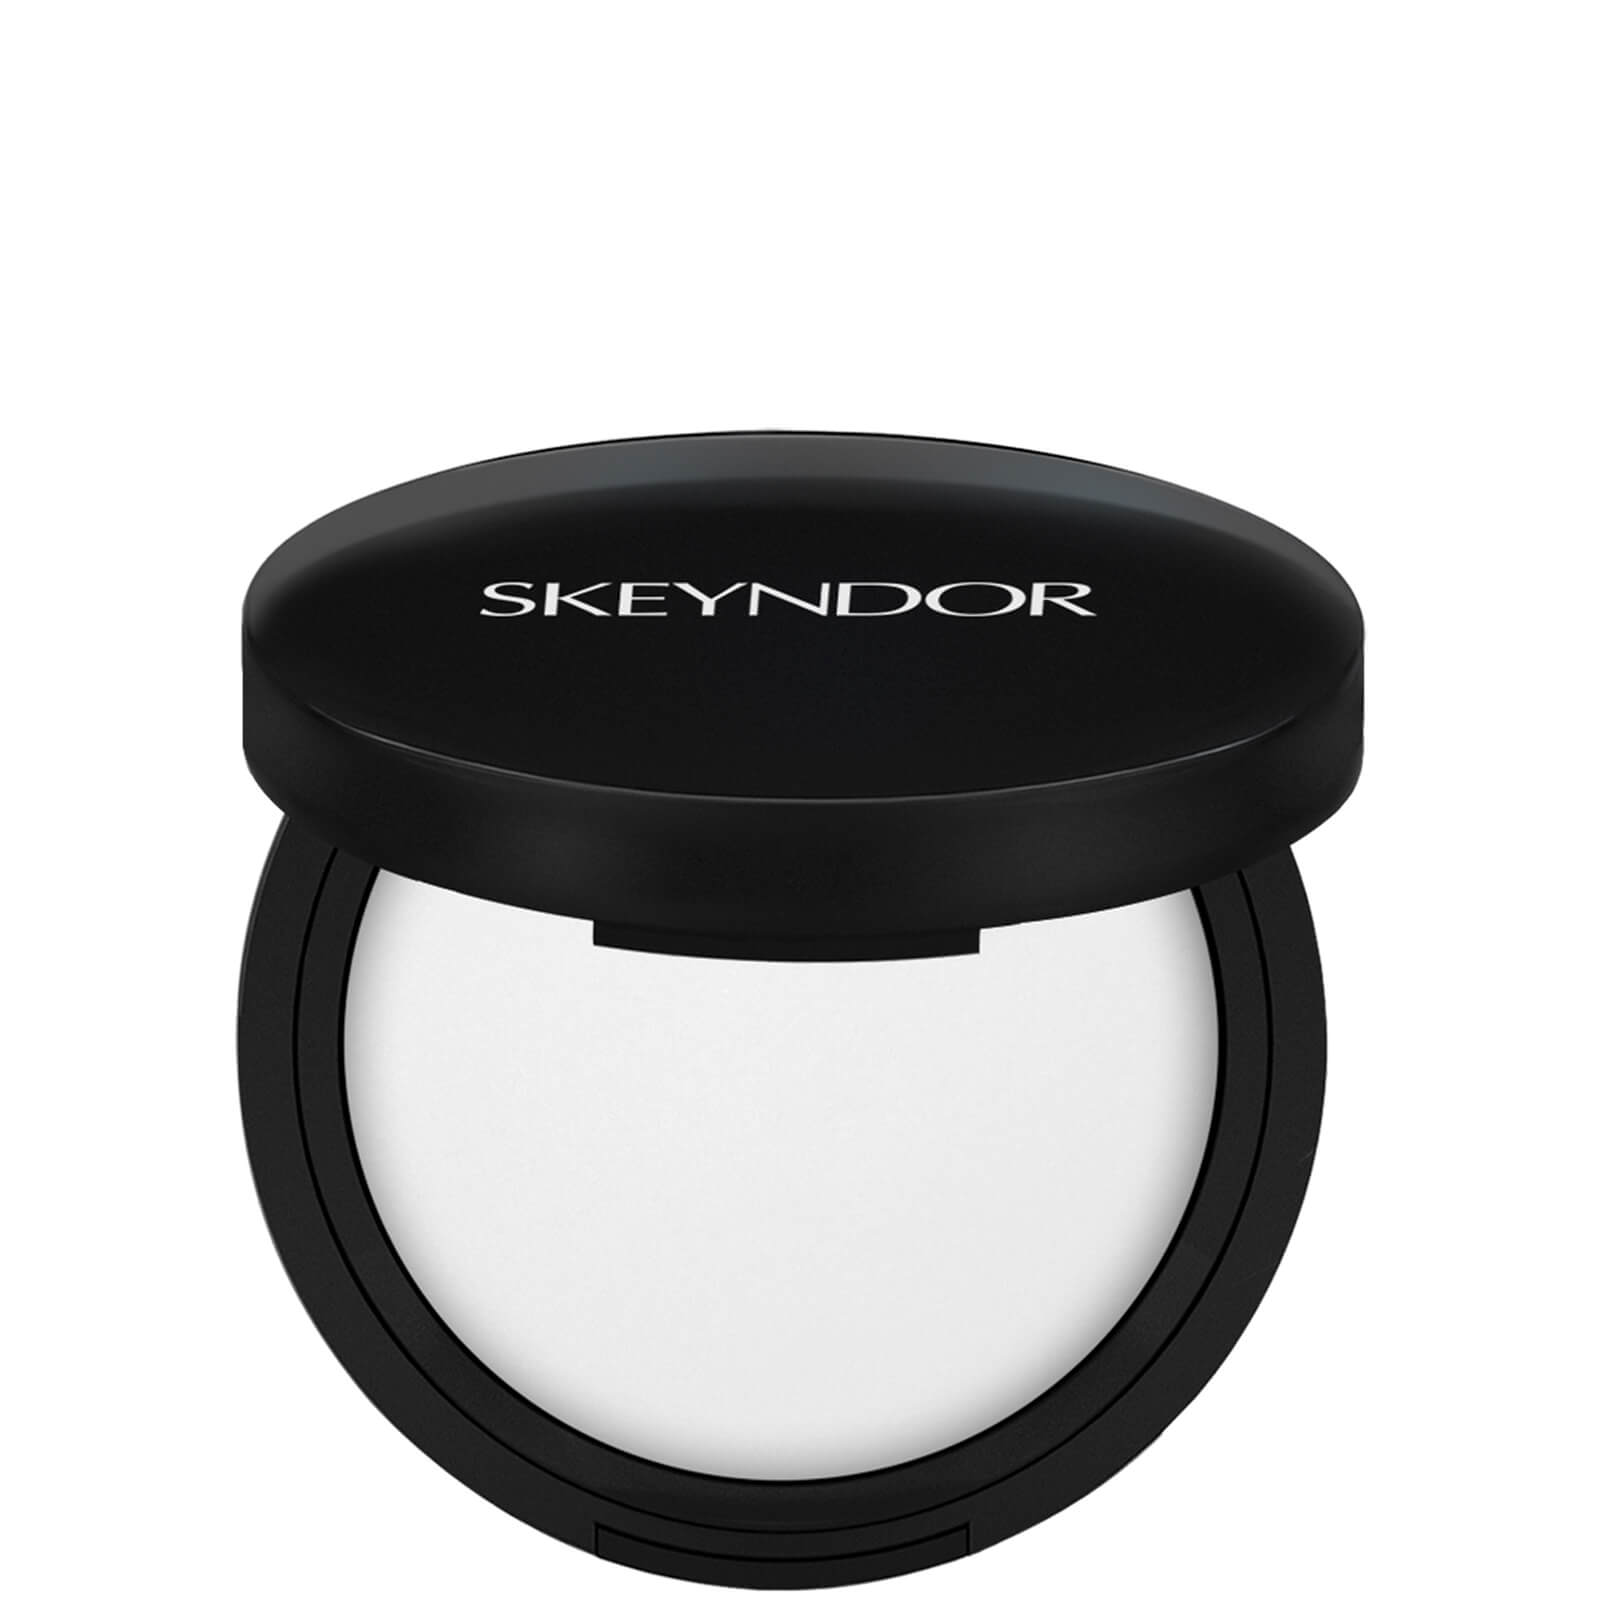 Skeyndor High Definiton Compact Powder 12 5g